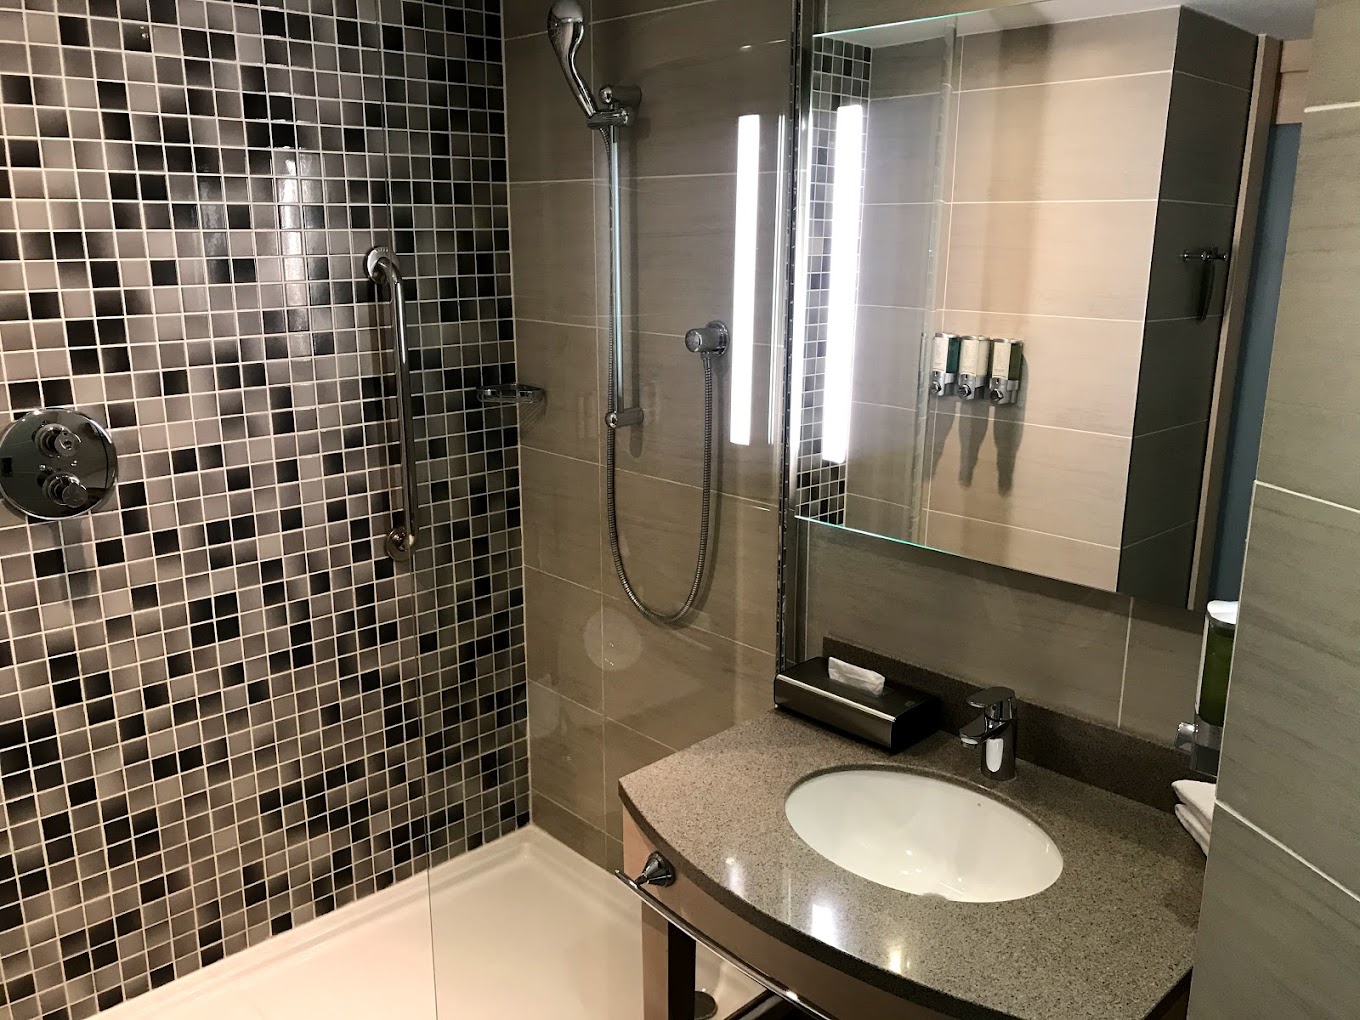 Odalar özel banyoludur. Ücretsiz banyo malzemeleri, ütü olanakları ve saç kurutma makinesi mevcuttur..